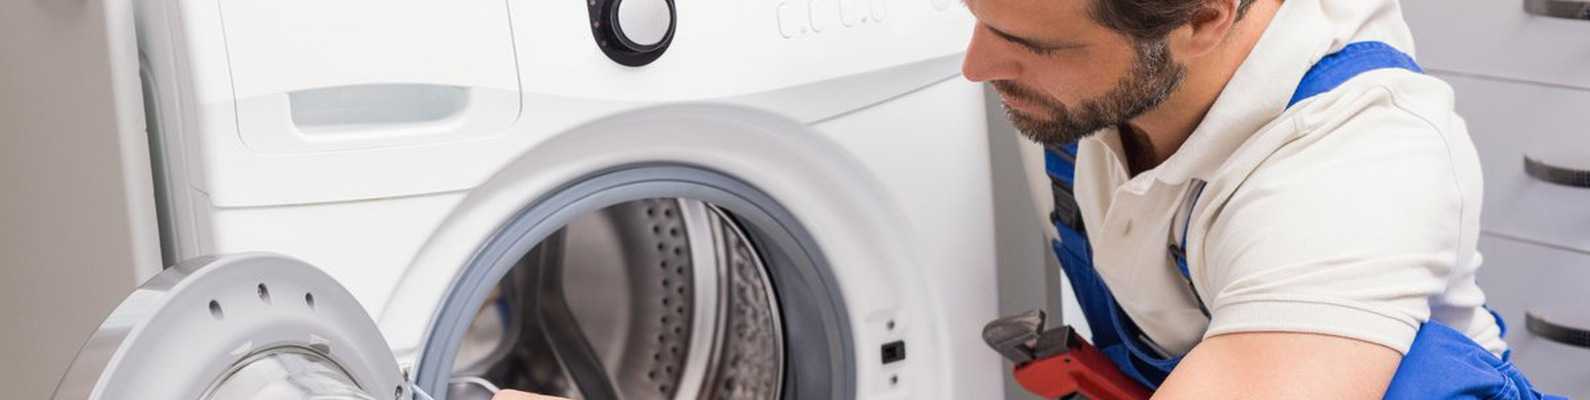 Ремонт плат стиральных машин: ремонт блоков управления своими руками. как проверить электронный модуль стиральной машины?